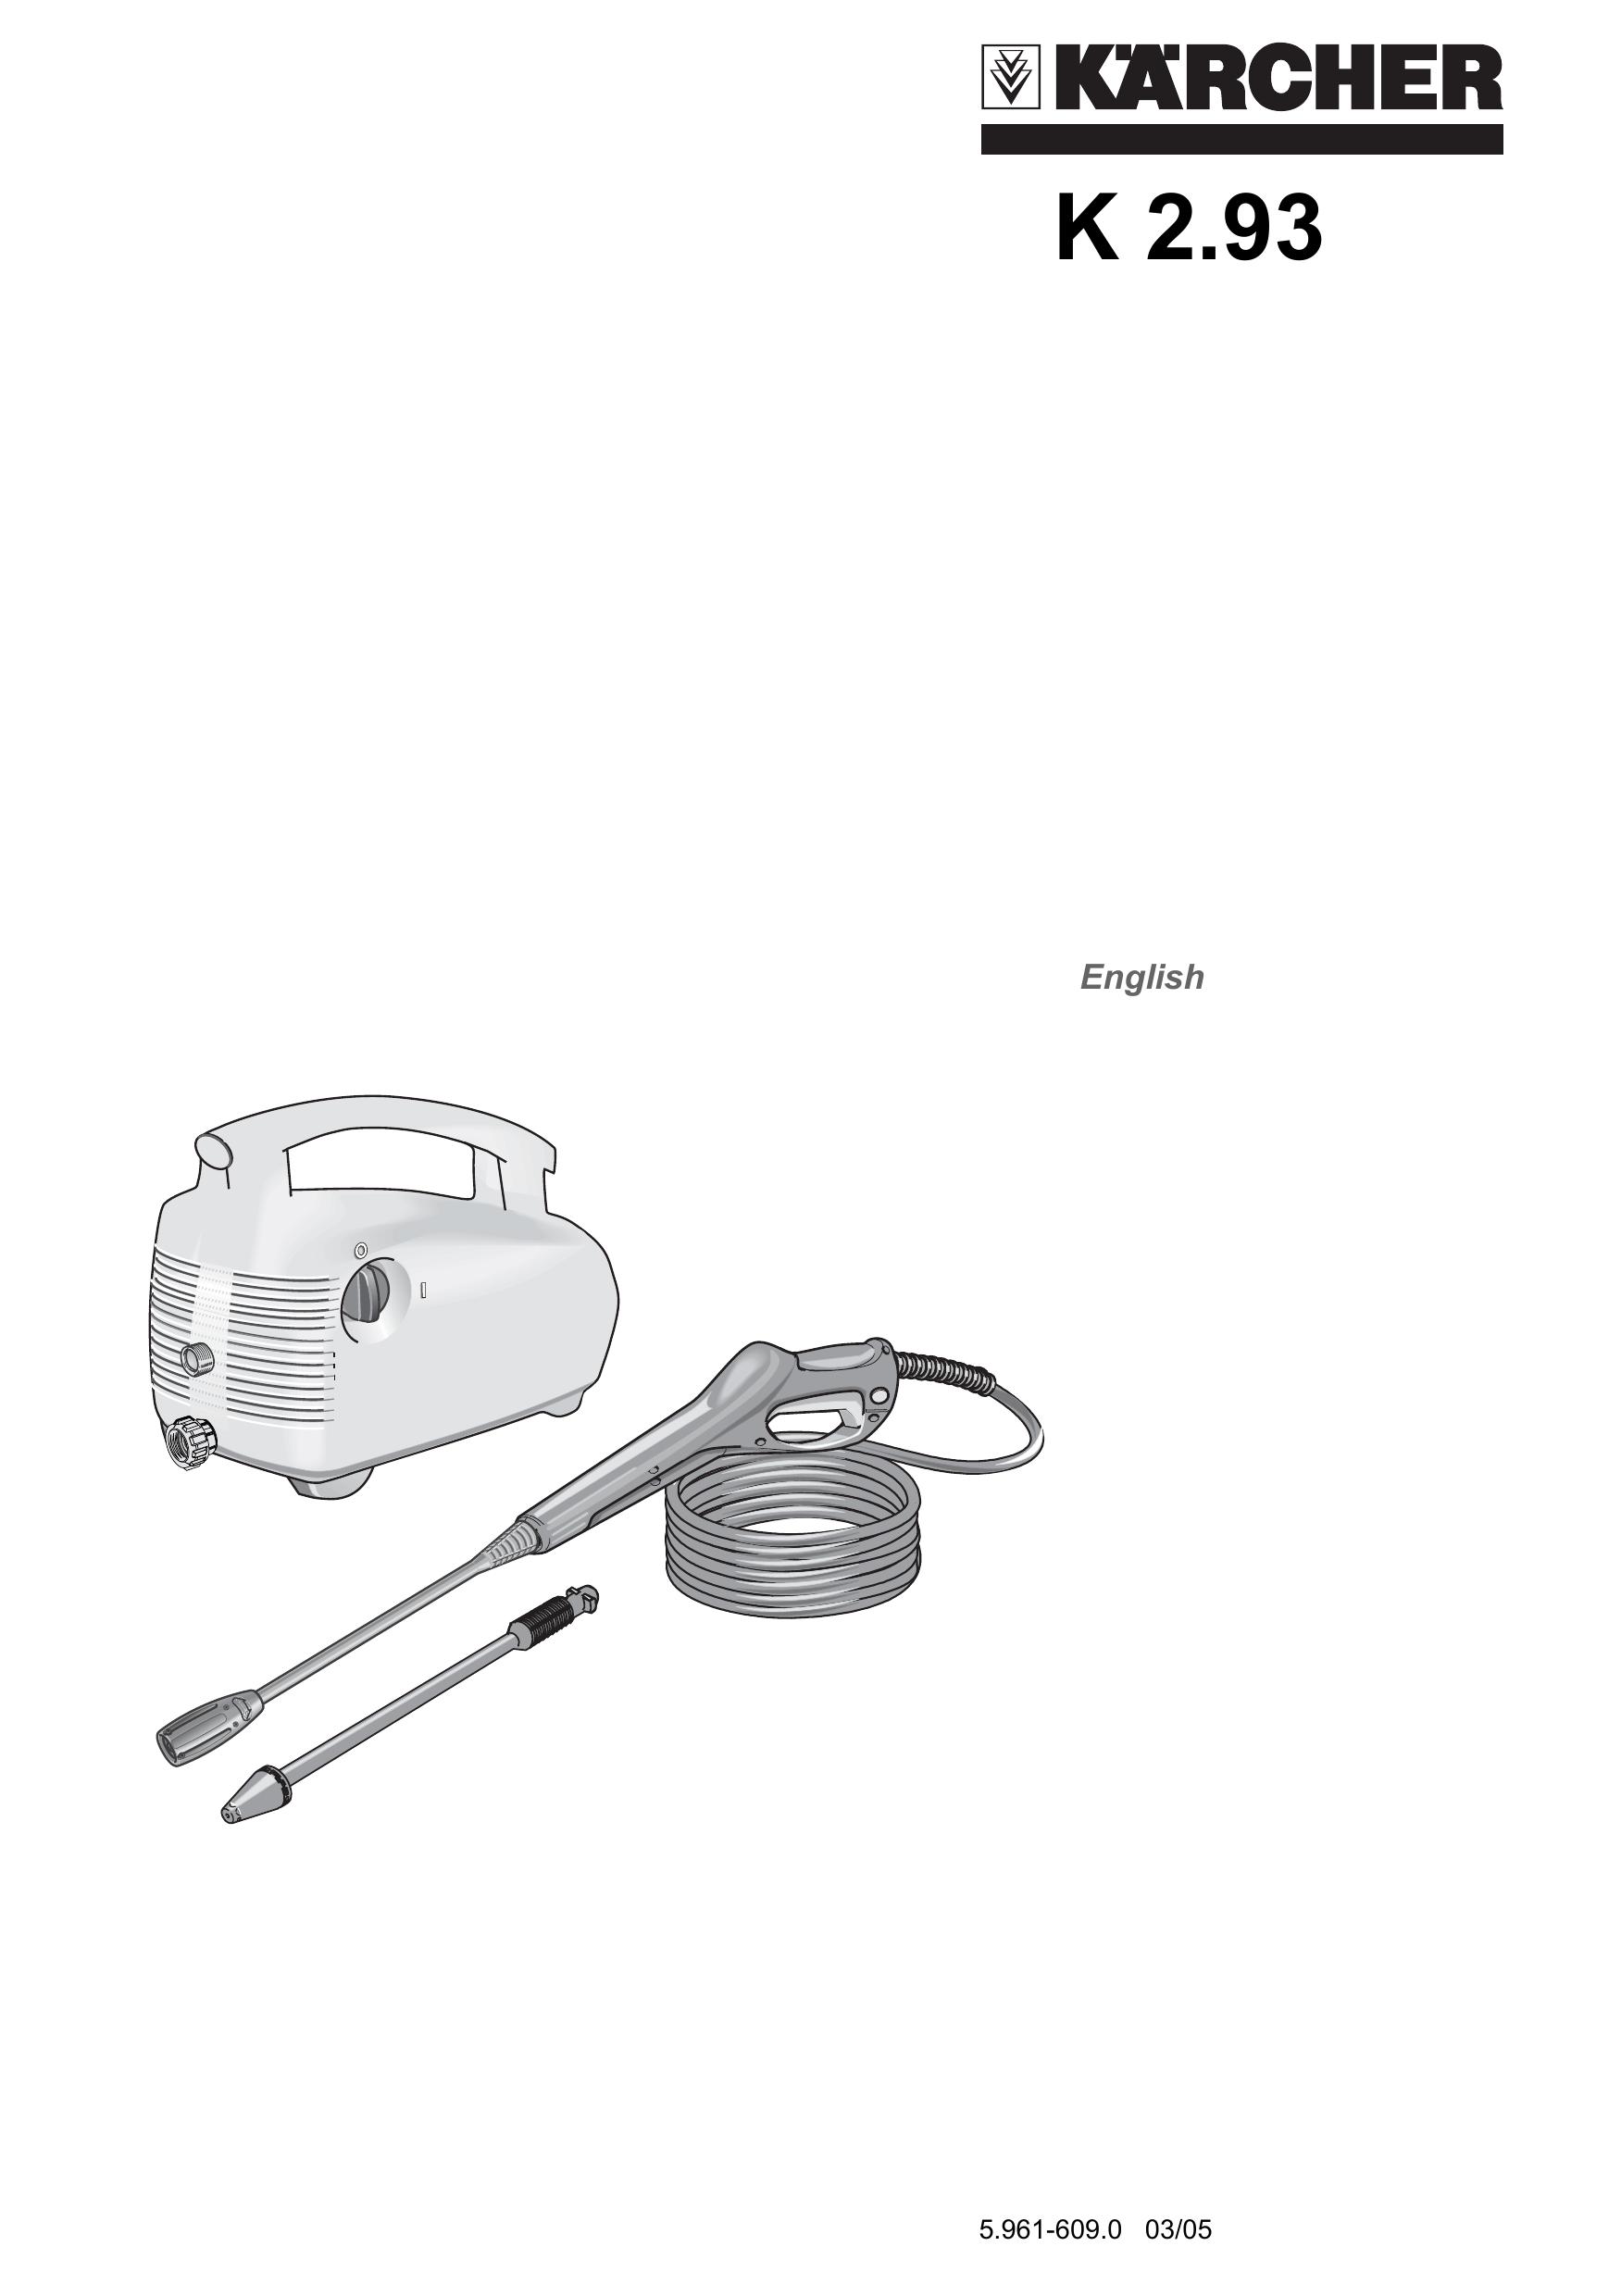 Karcher 5.961-609.0 Pressure Washer User Manual